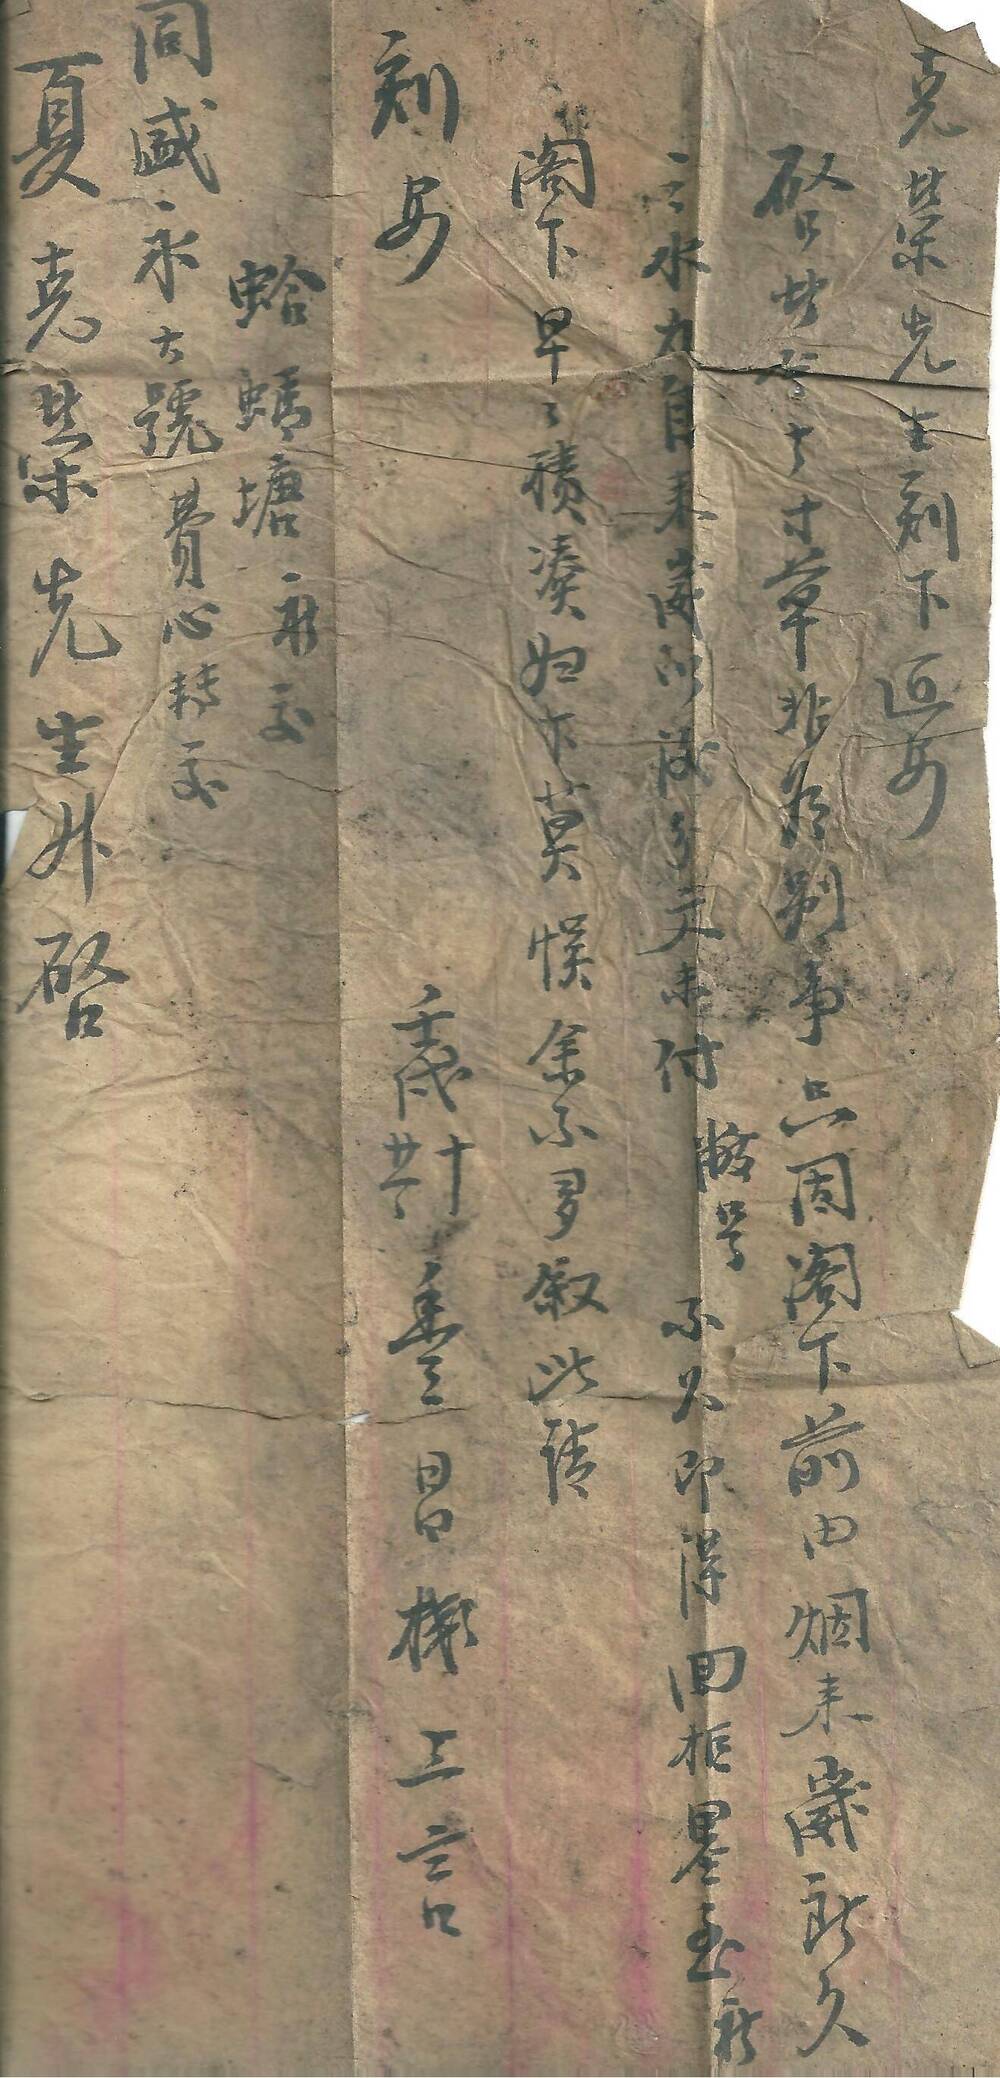 Письмо на китайском языке господину Кэ Жун от Лю Сюе Чэн